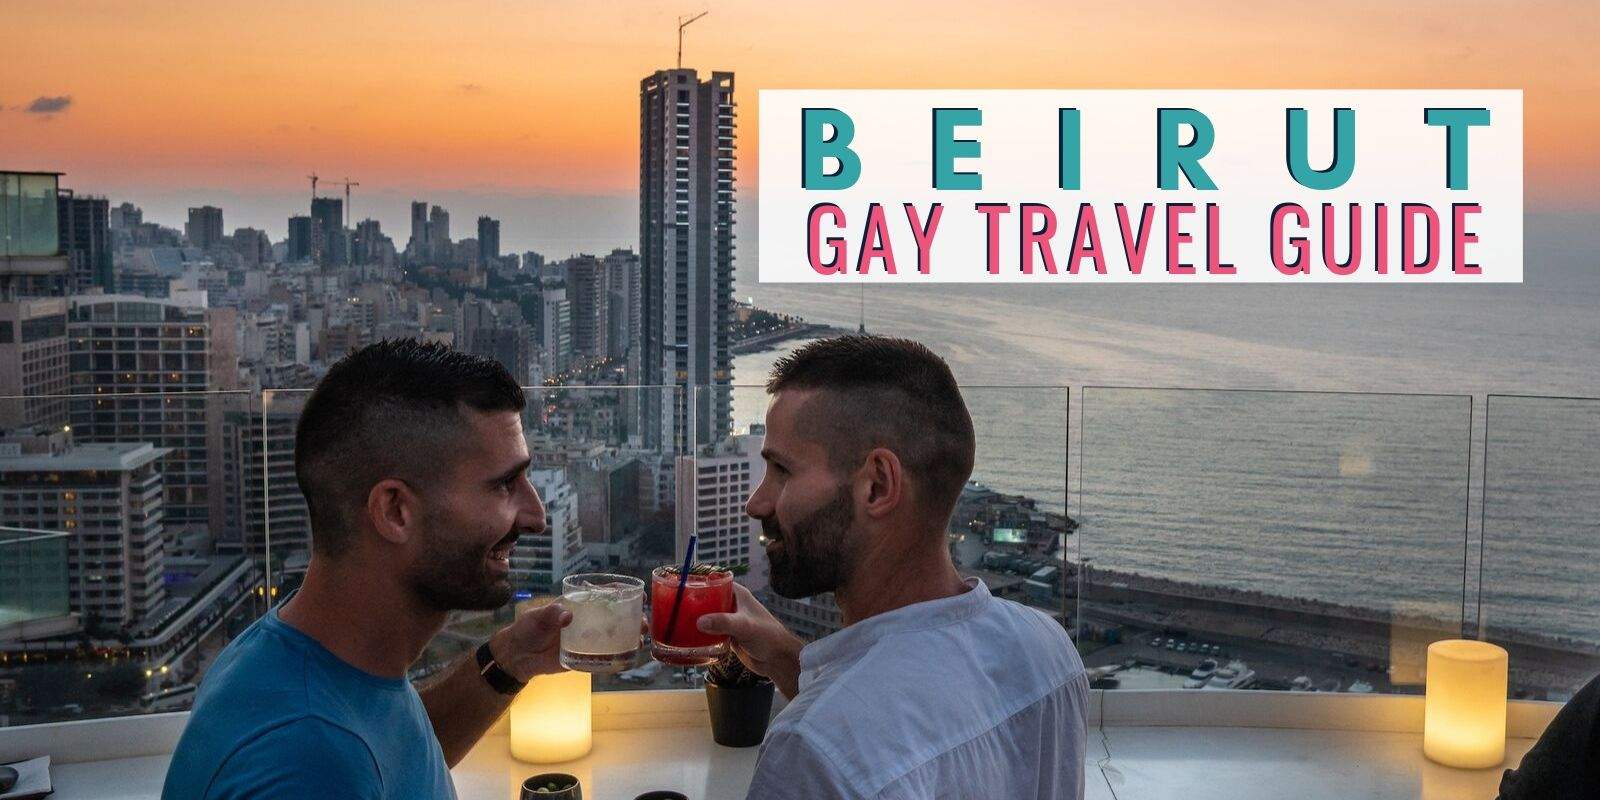 In Beirut beur gay Beirut Gay